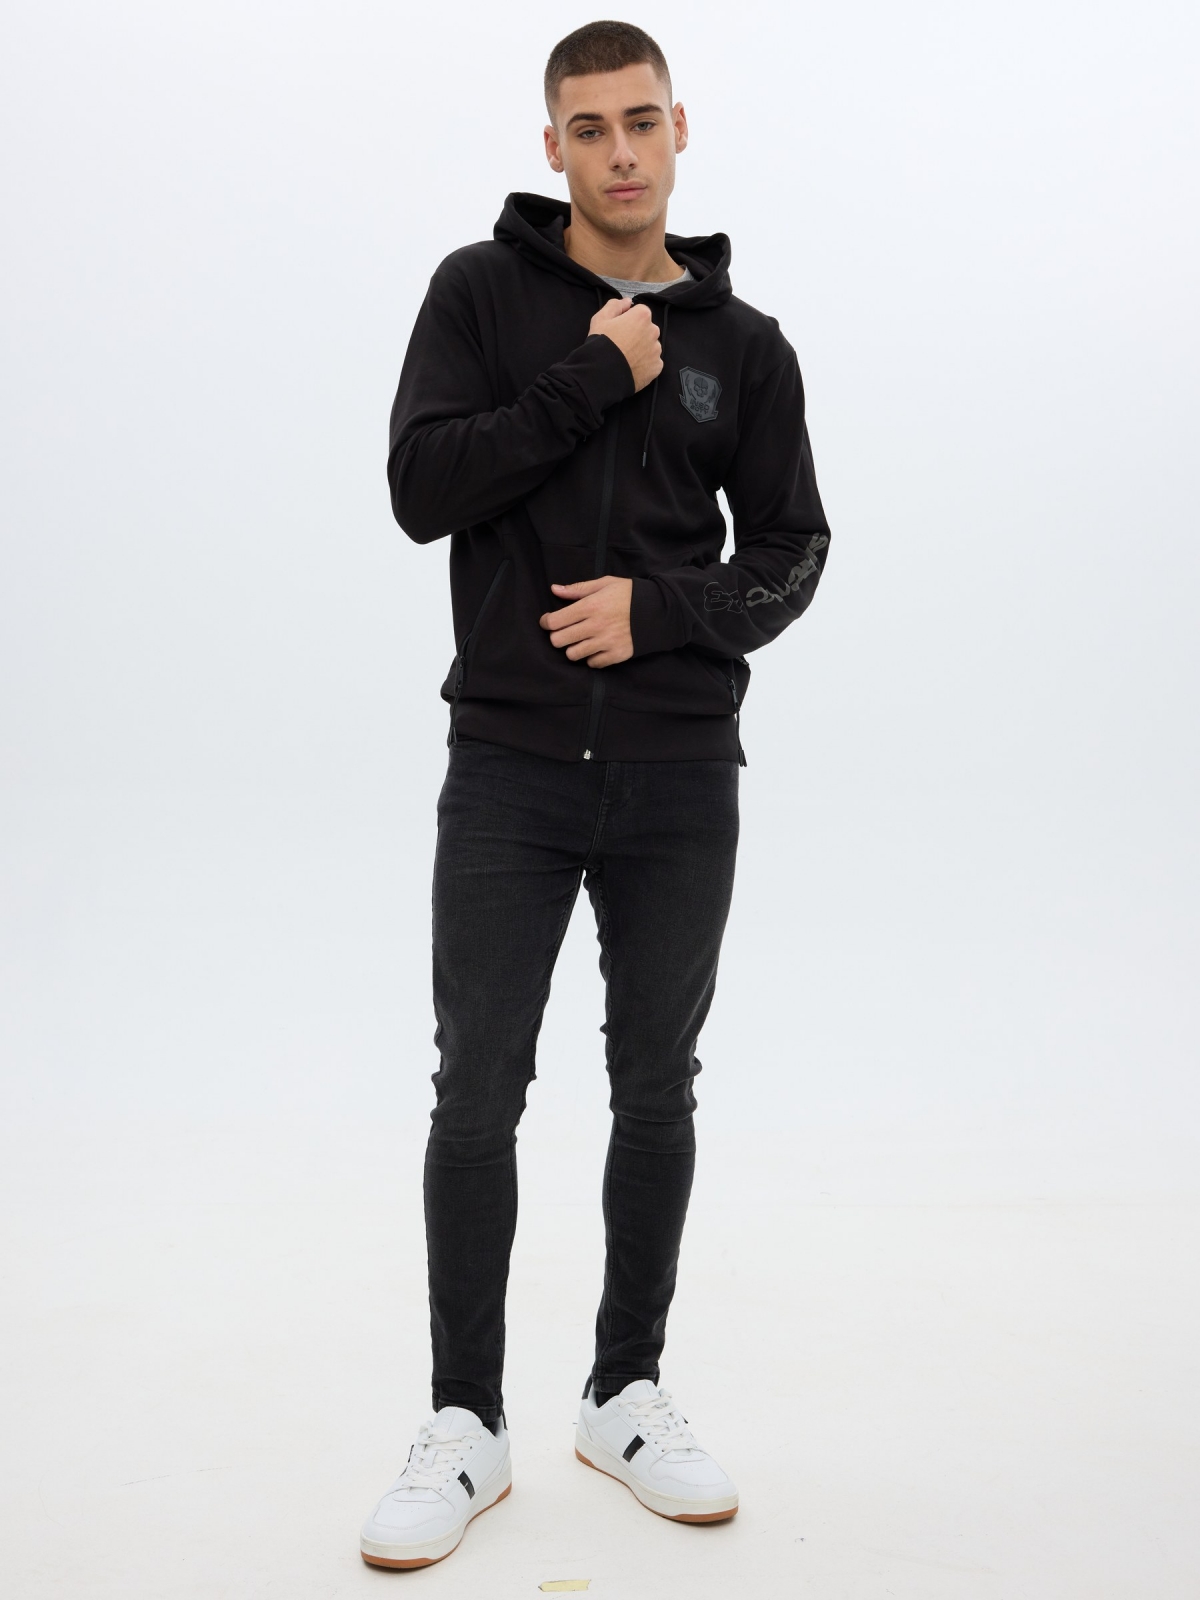 Zipper hooded sweatshirt black front view